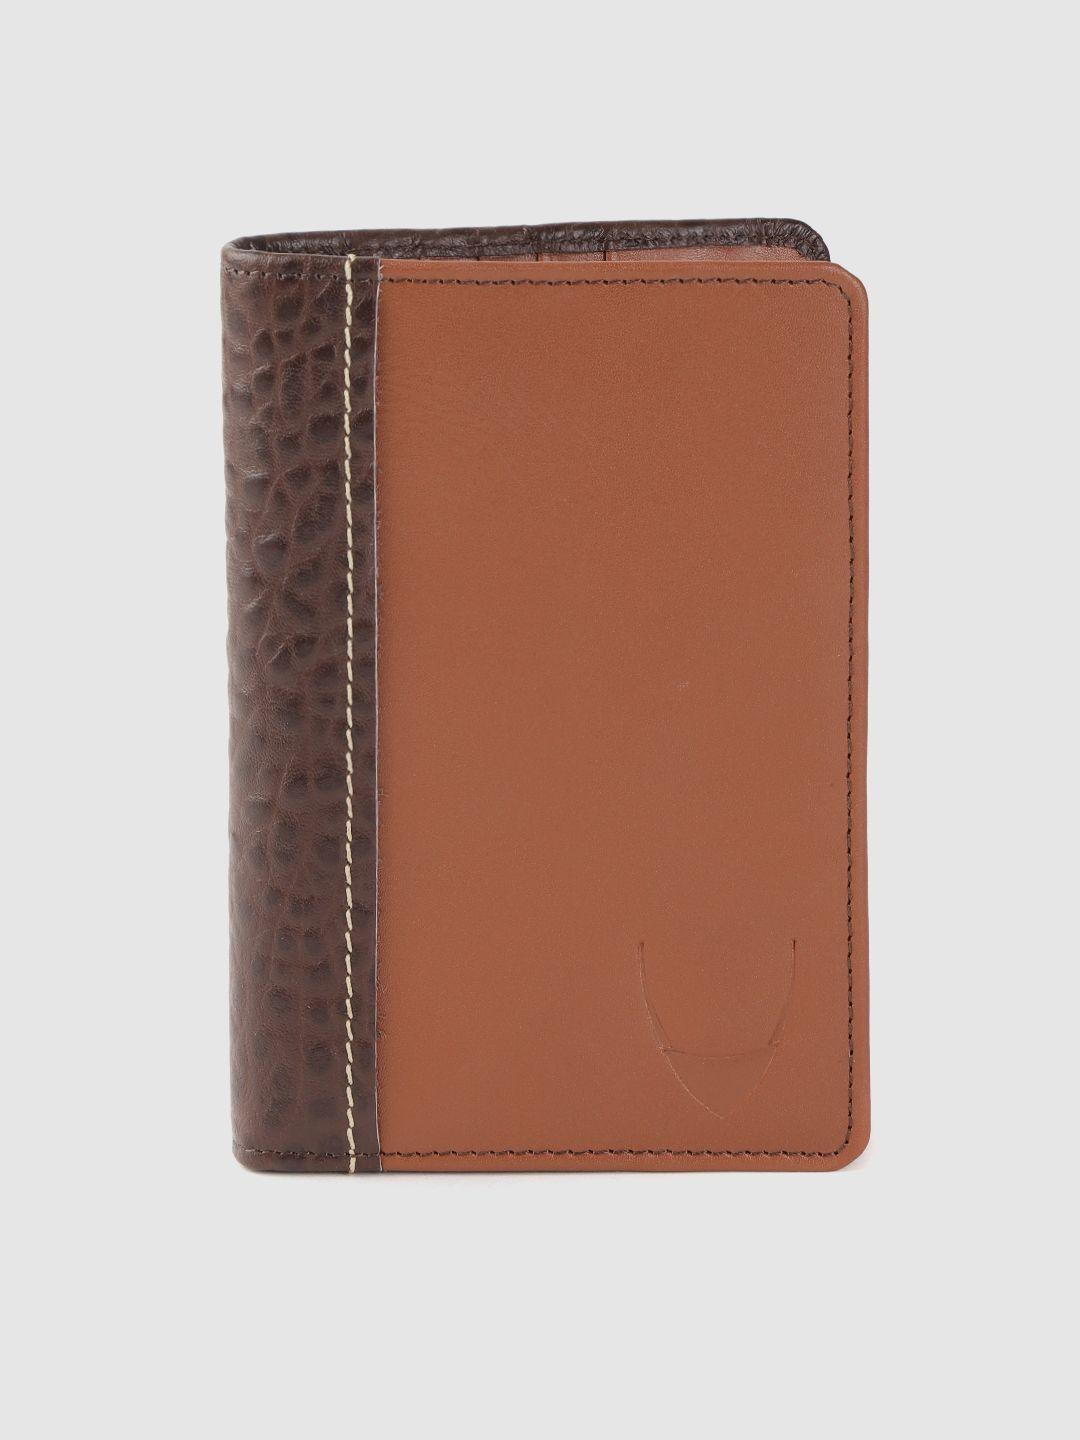 hidesign-women-brown-croc-textured-leather-passport-holder